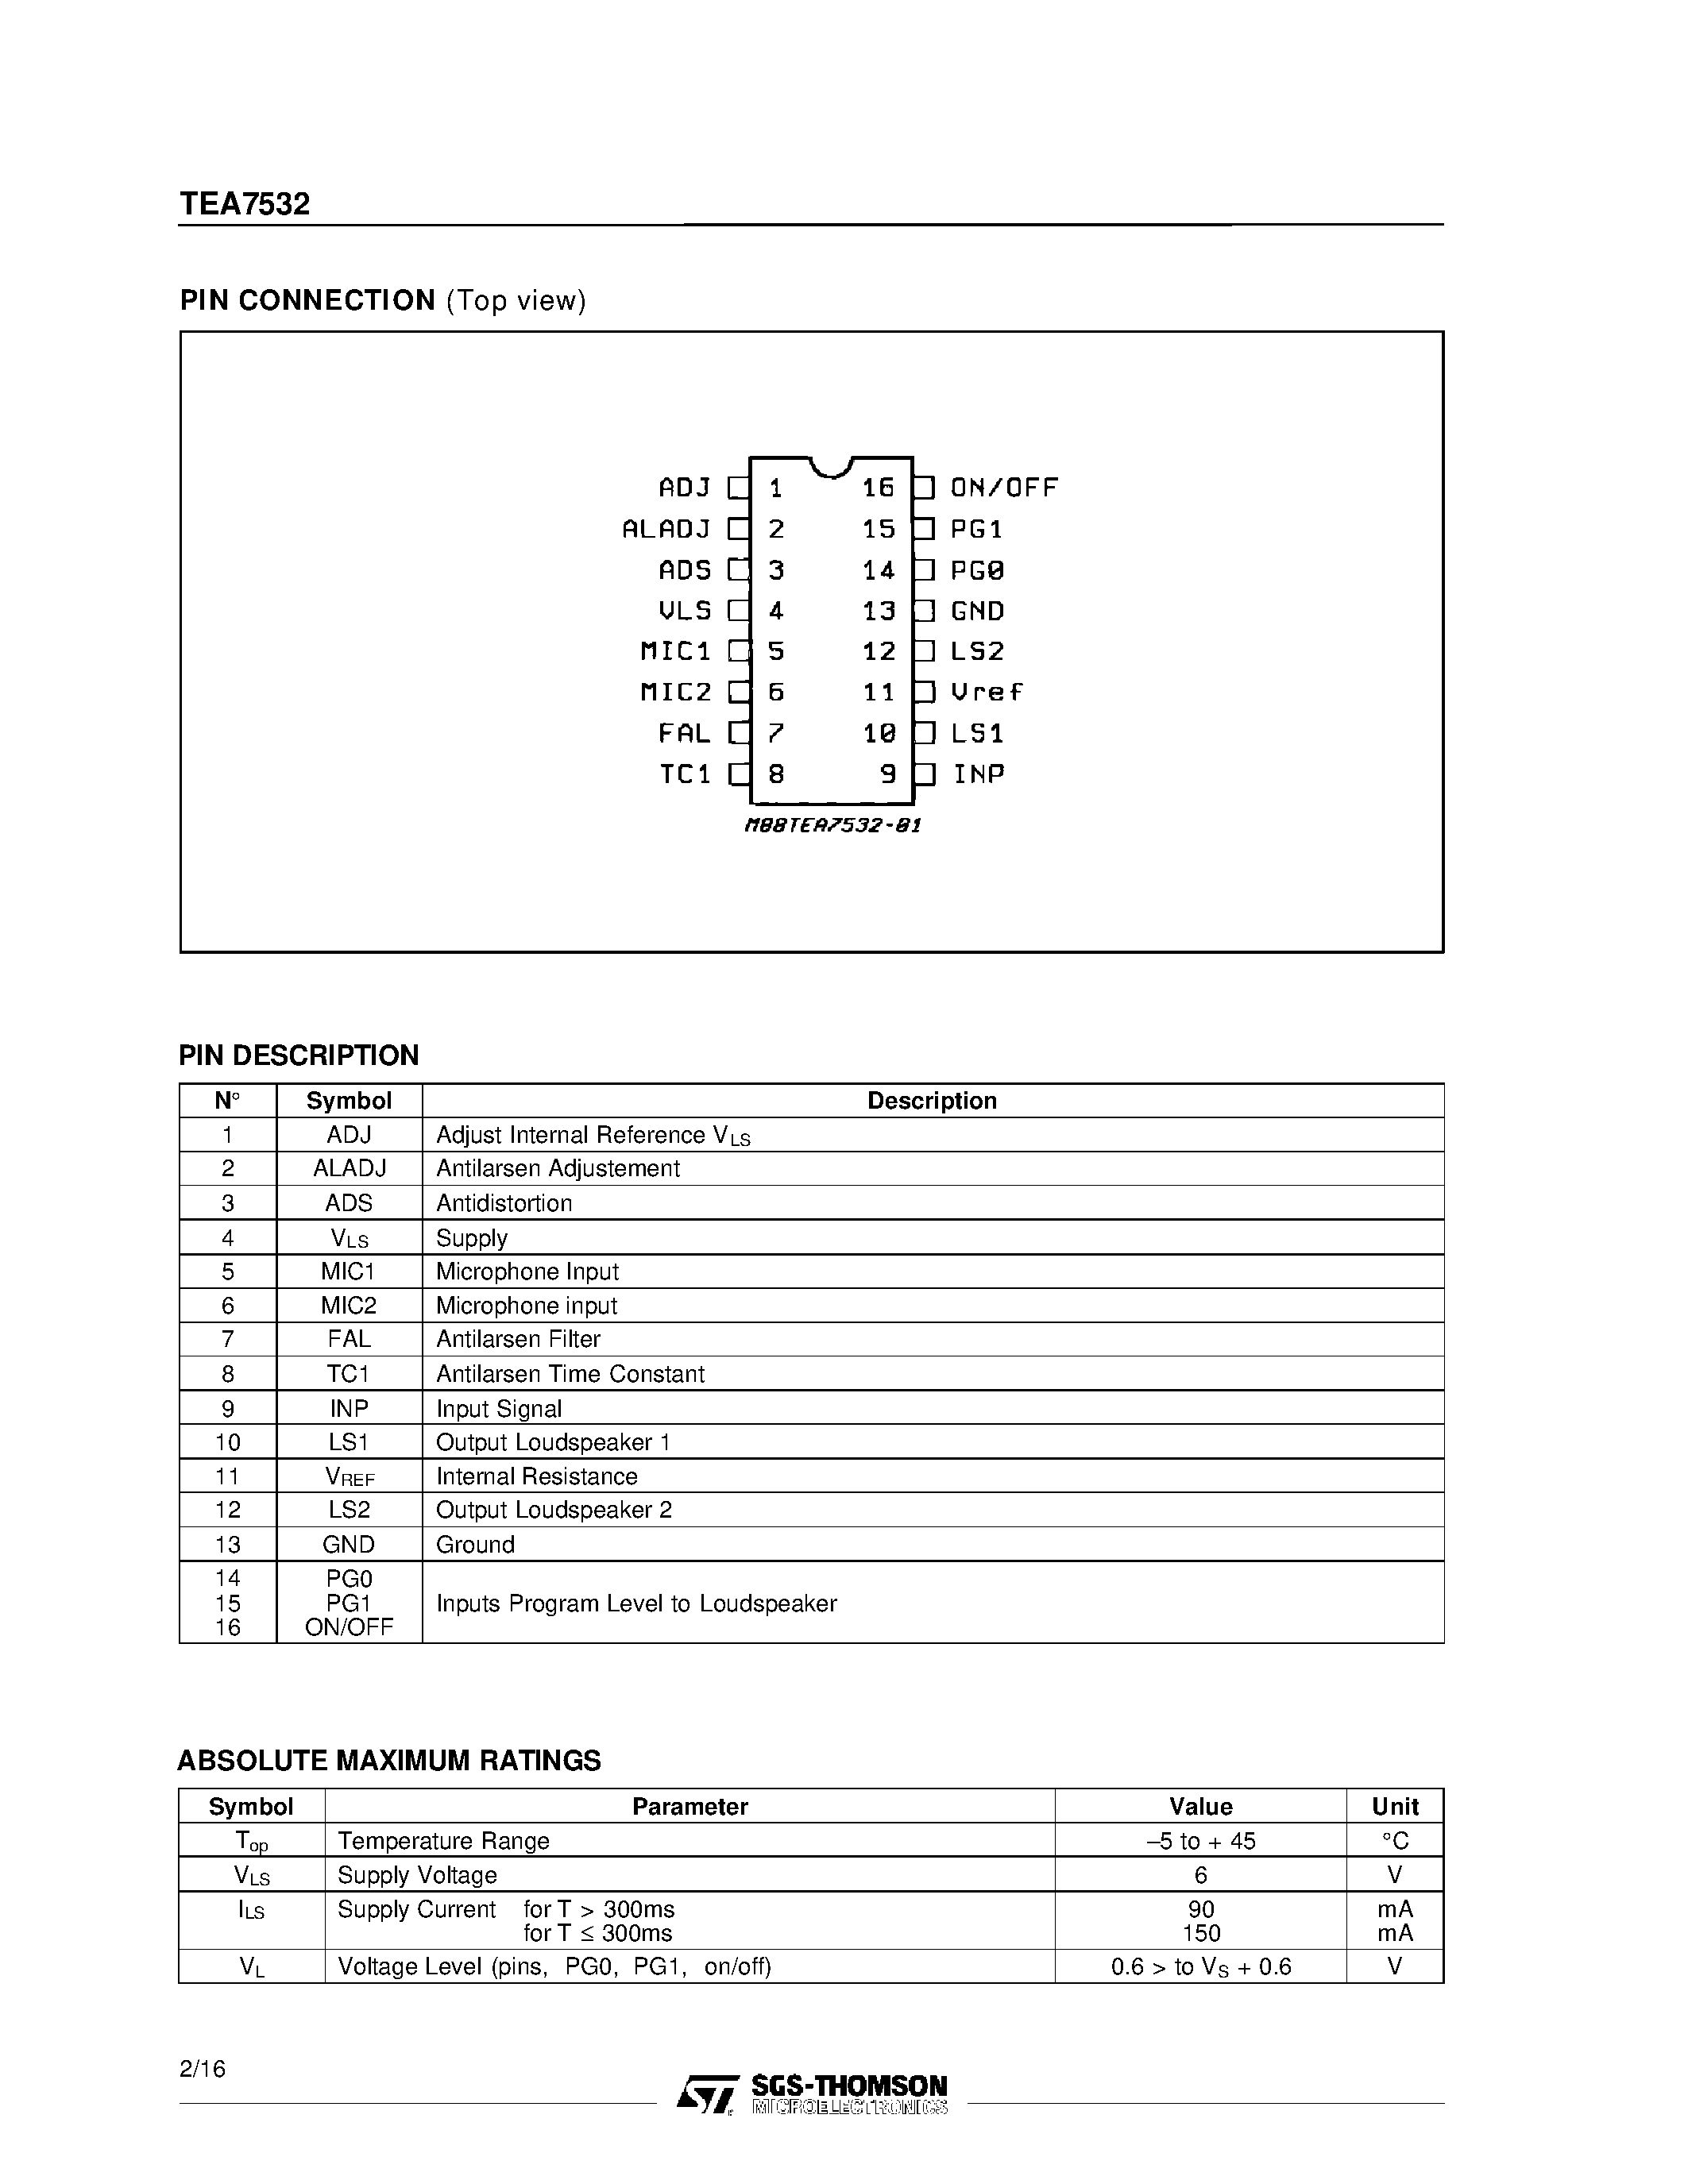 Datasheet TEA7532DP - MONITOR AMPLIFIER page 2